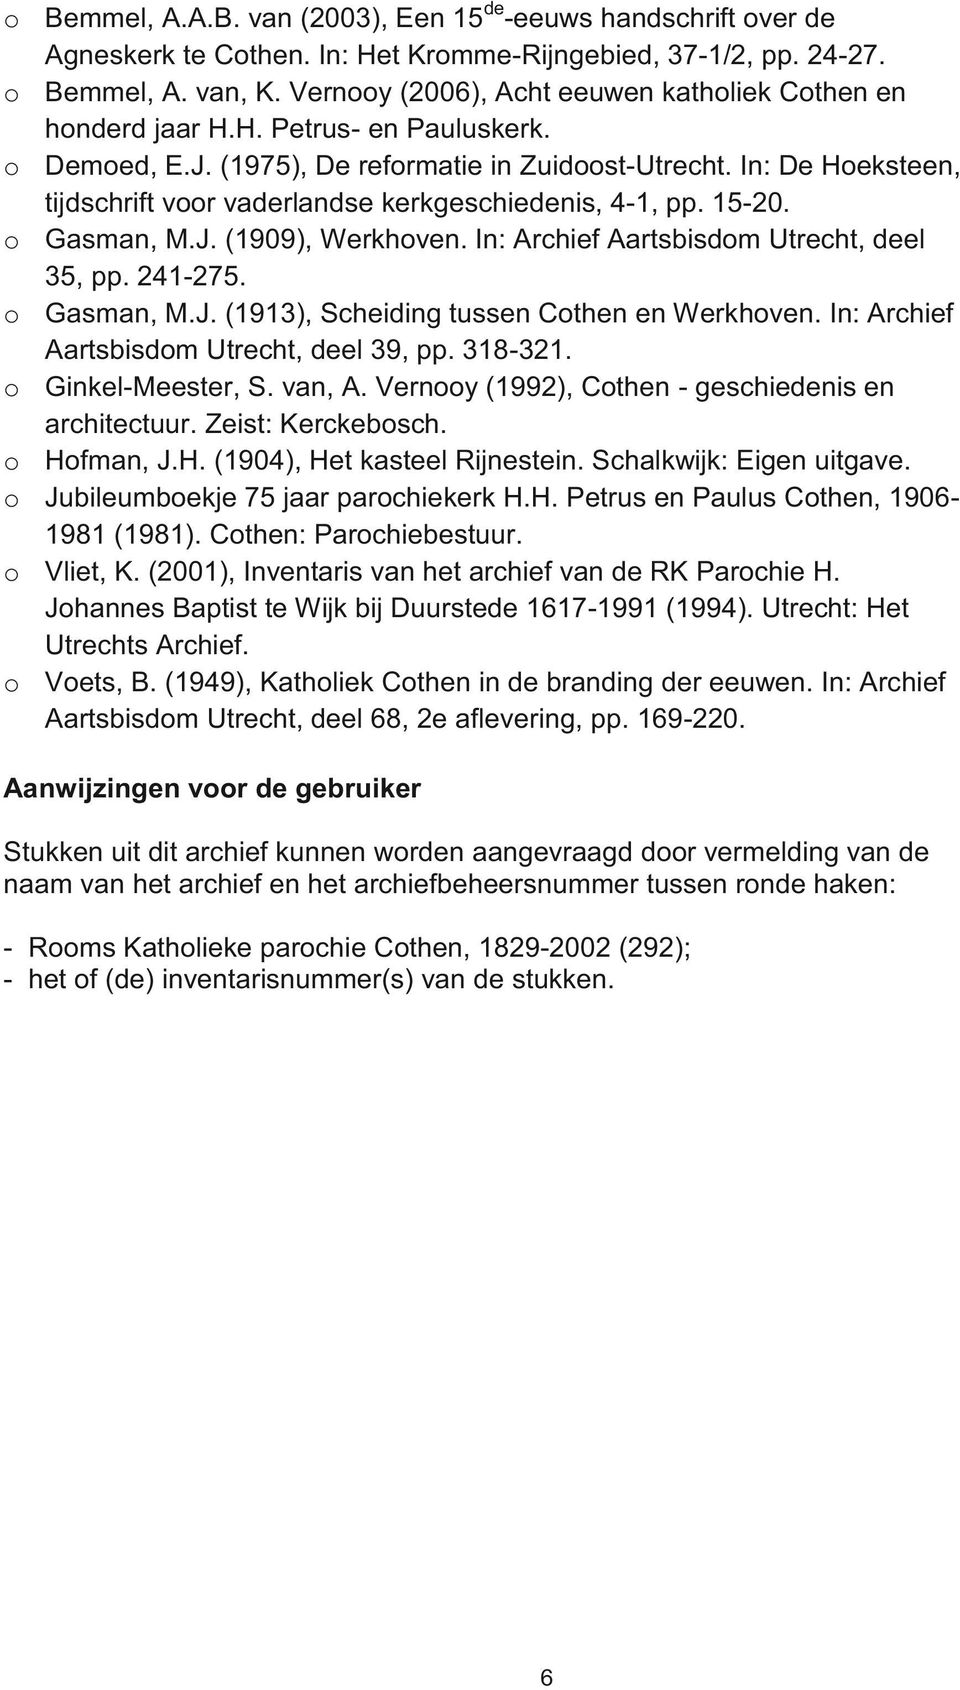 In: De Hoeksteen, tijdschrift voor vaderlandse kerkgeschiedenis, 4-1, pp. 15-20. o Gasman, M.J. (1909), Werkhoven. In: Archief Aartsbisdom Utrecht, deel 35, pp. 241-275. o Gasman, M.J. (1913), Scheiding tussen Cothen en Werkhoven.